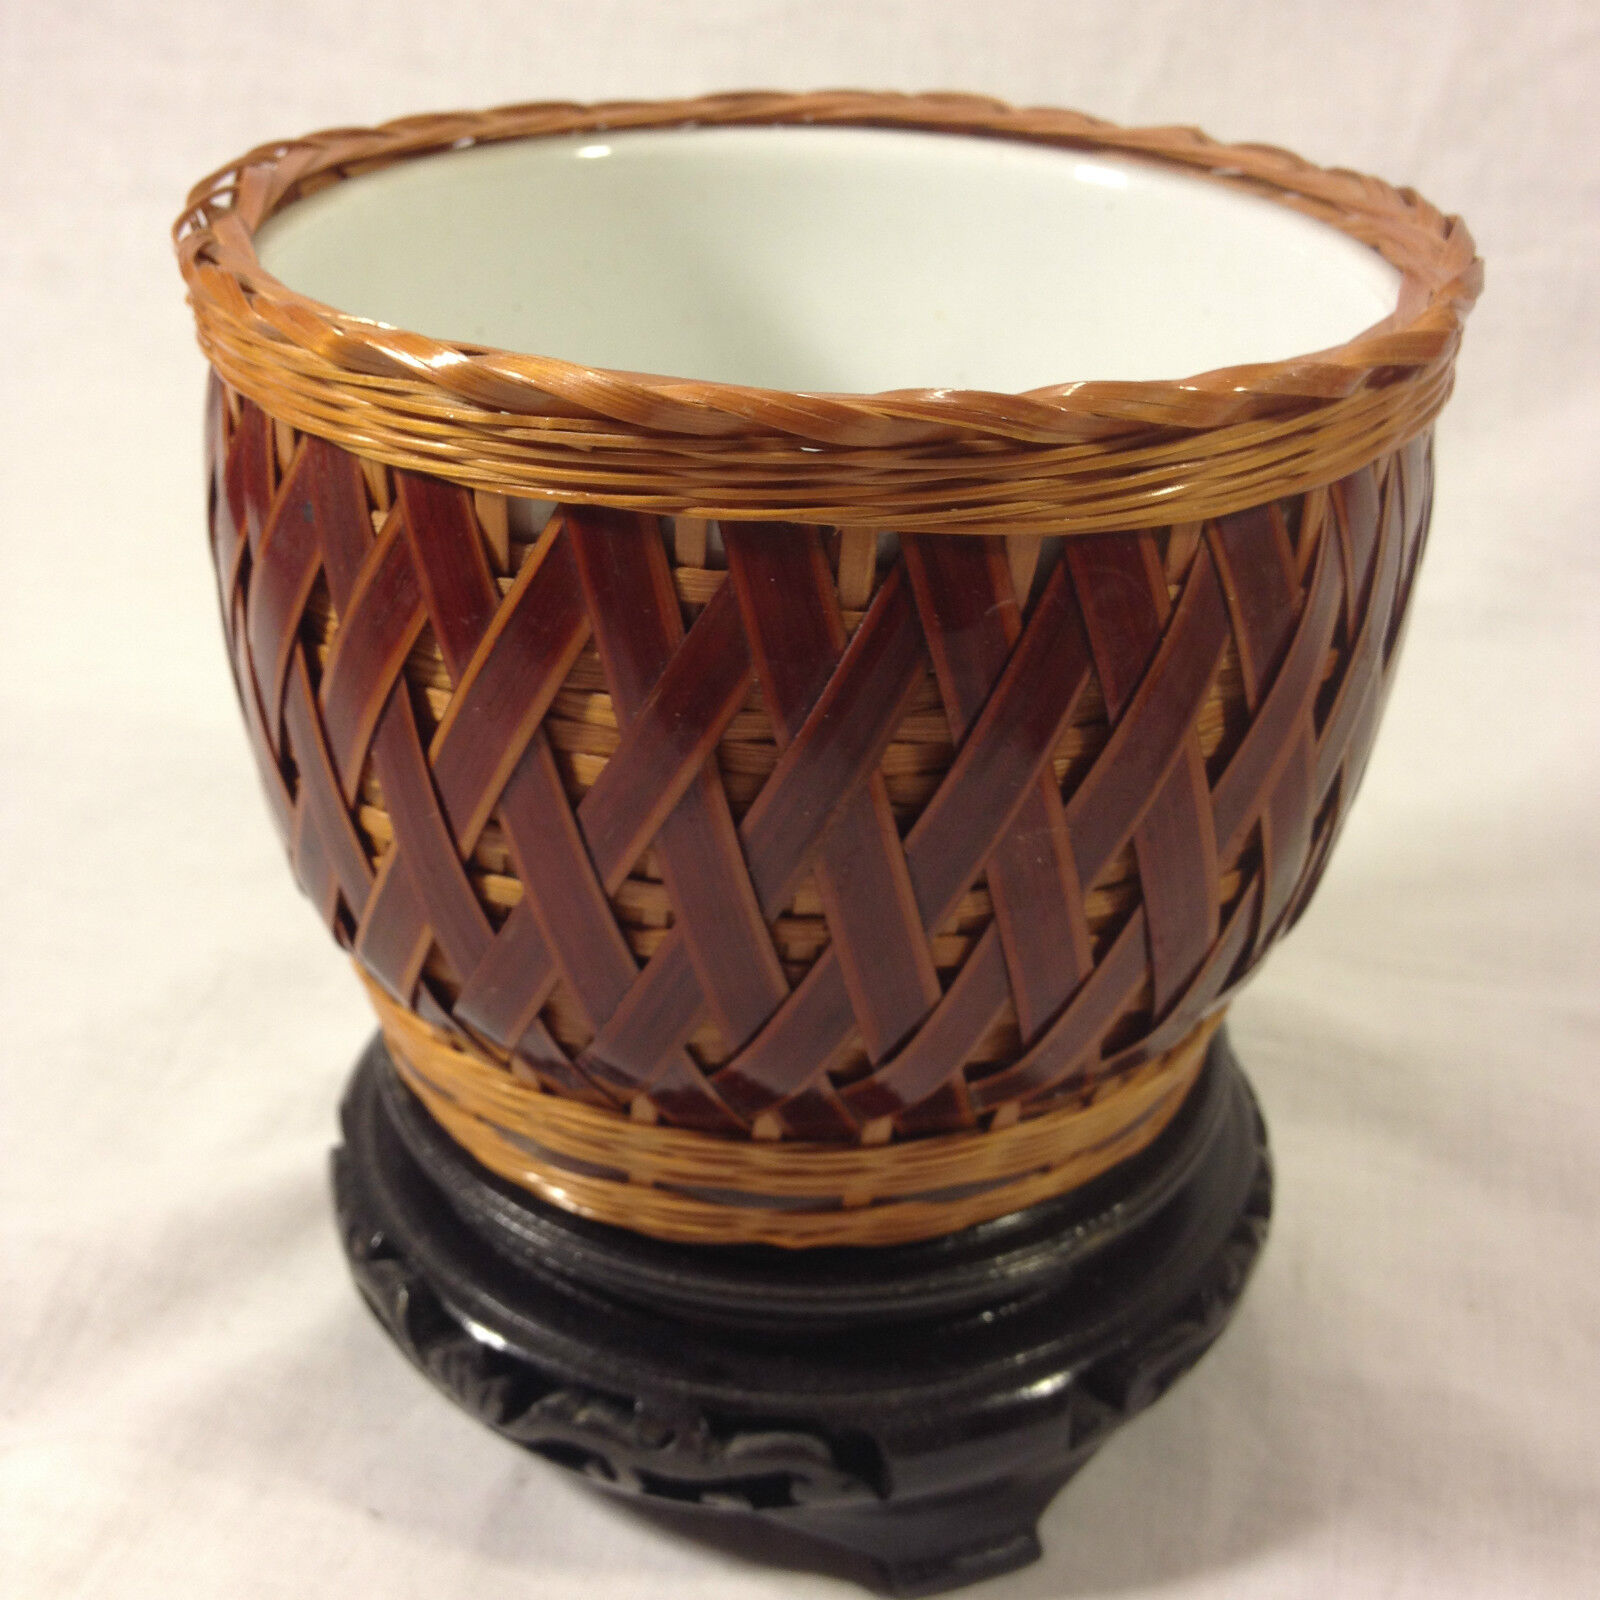 Bamboo Hand Woven Vase/Shallow Bowl w/Ceramic White Vase/Bowl Inside